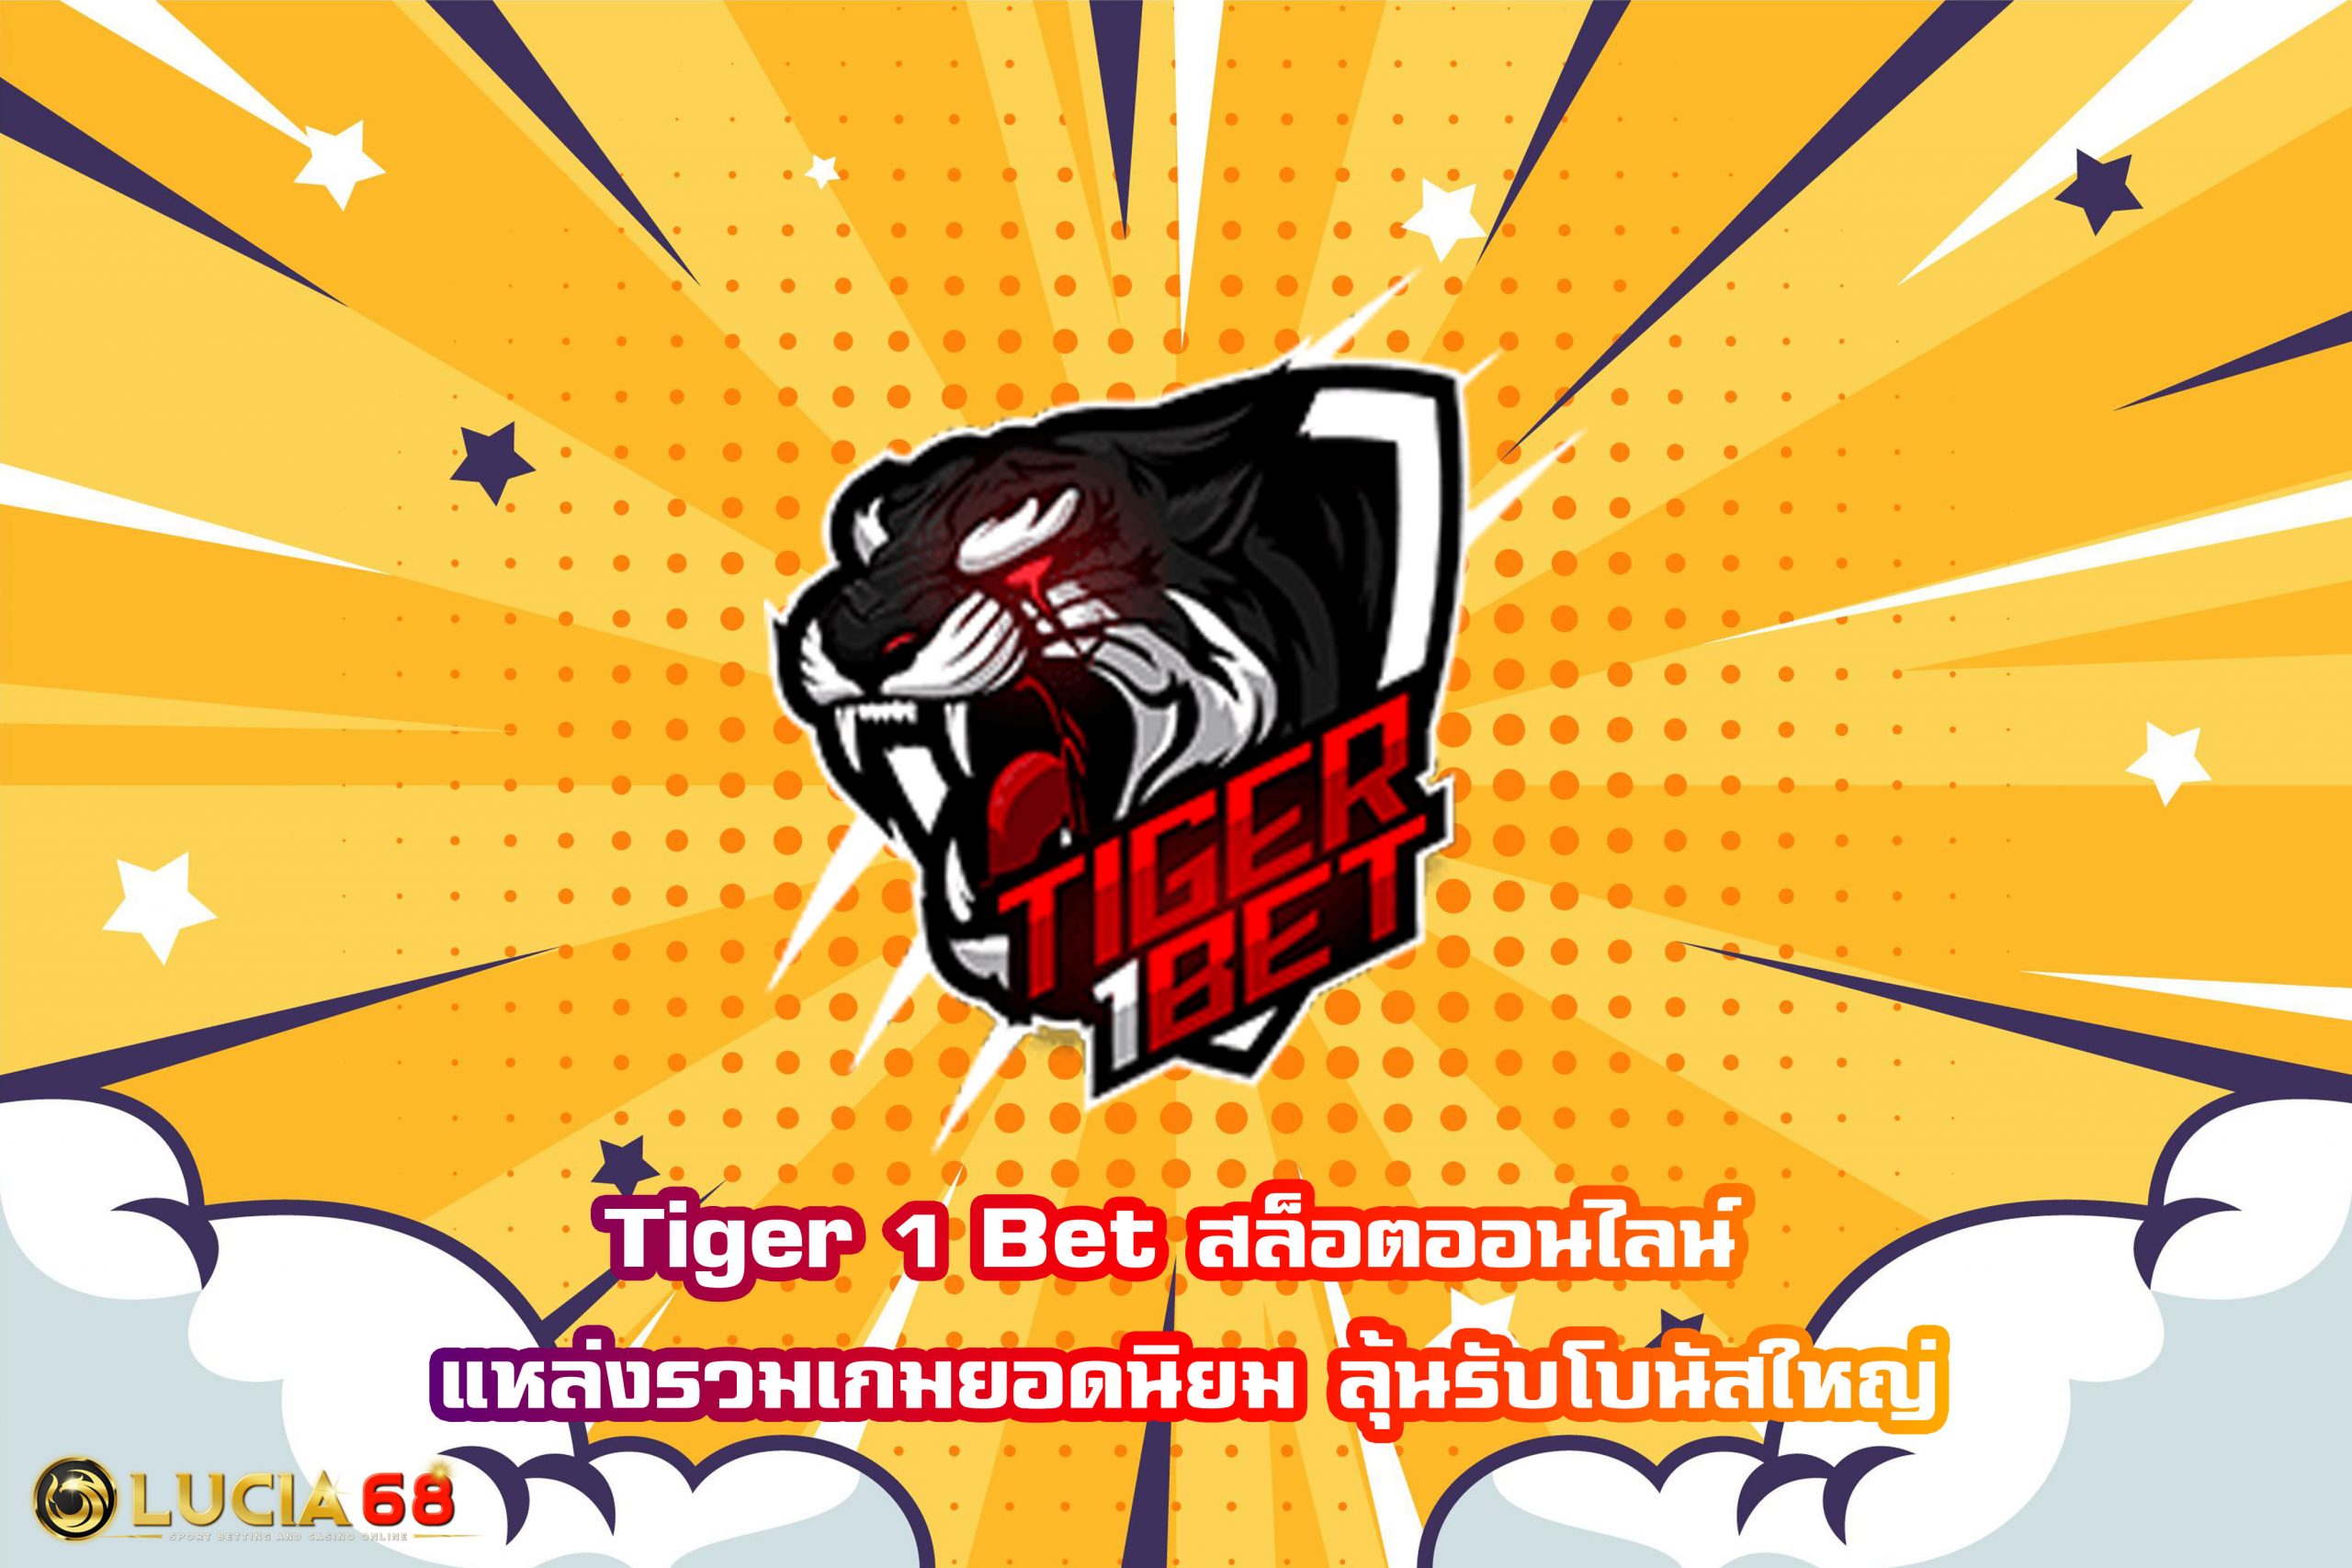 Tiger 1 Bet สล็อตออนไลน์ แหล่งรวมเกมยอดนิยม ลุ้นรับโบนัสใหญ่